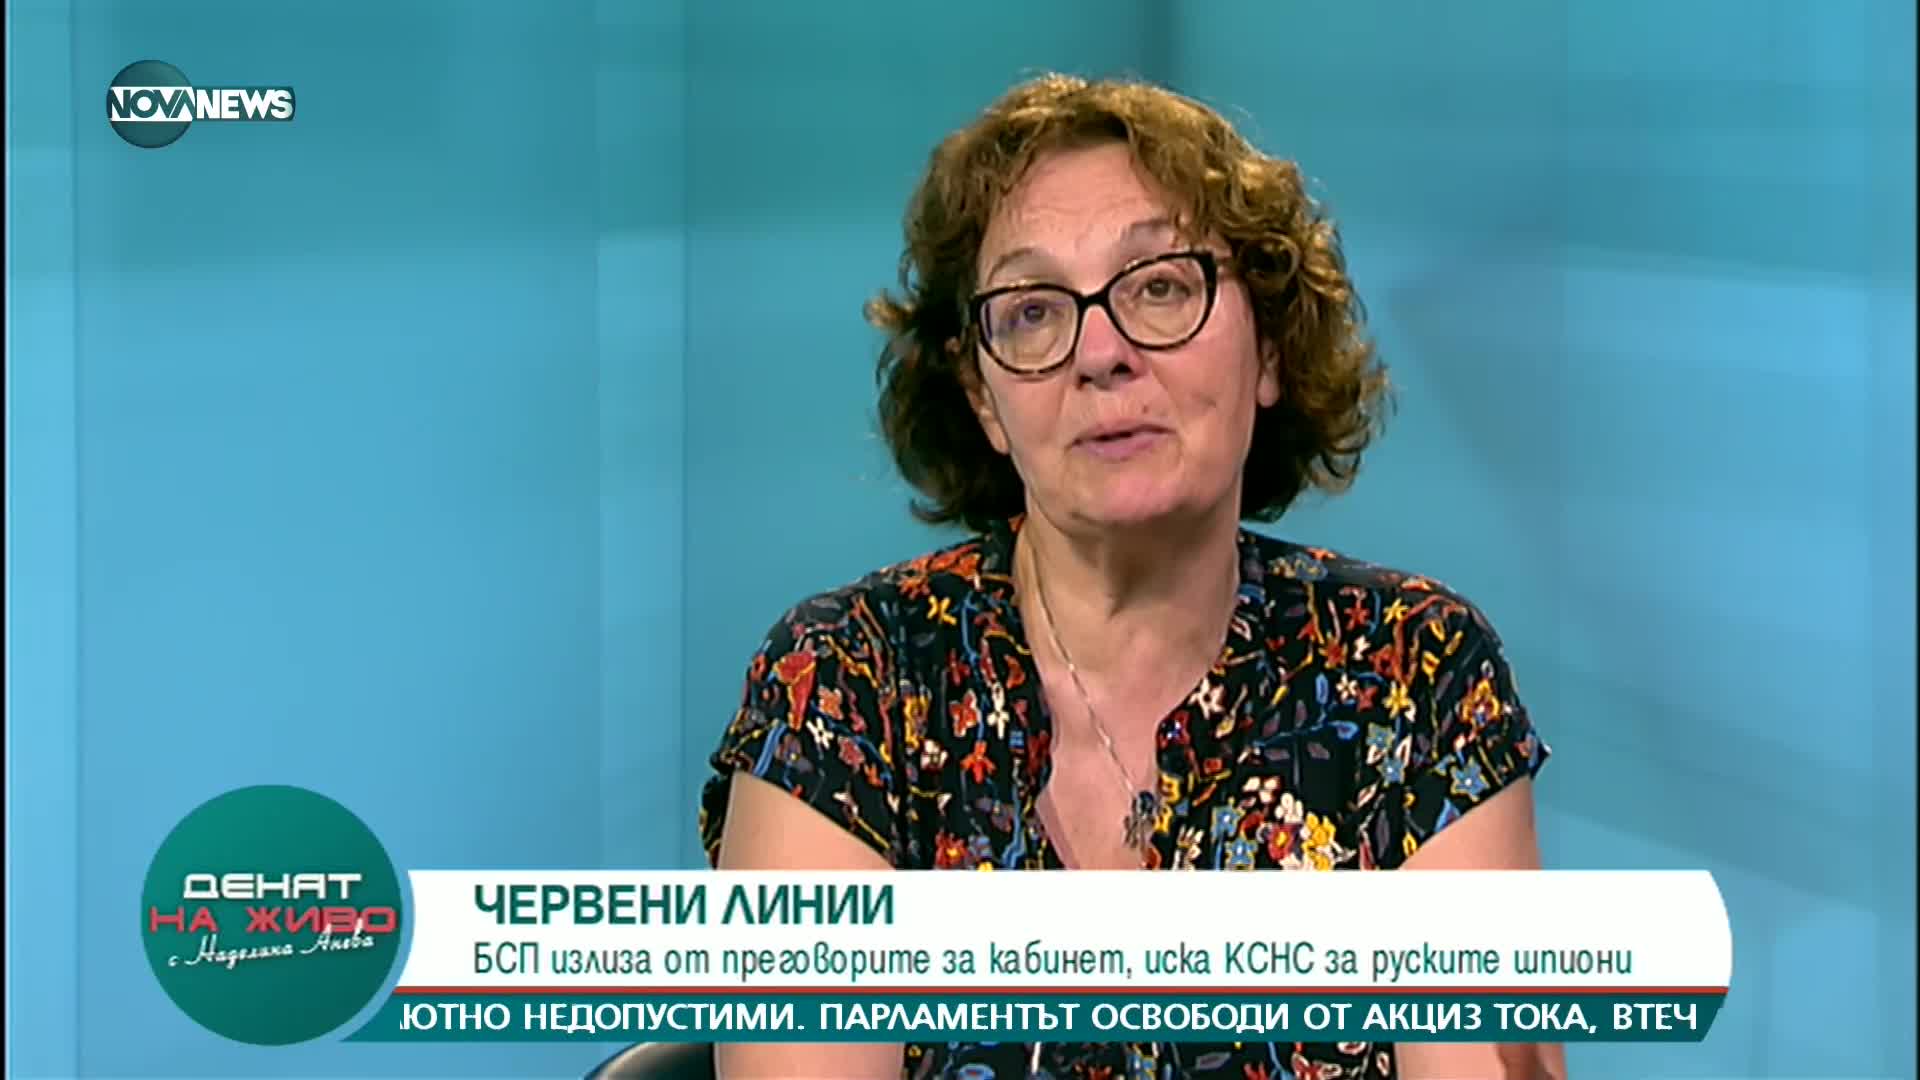 "Денят на живо": Гост е д-р Румяна Коларова